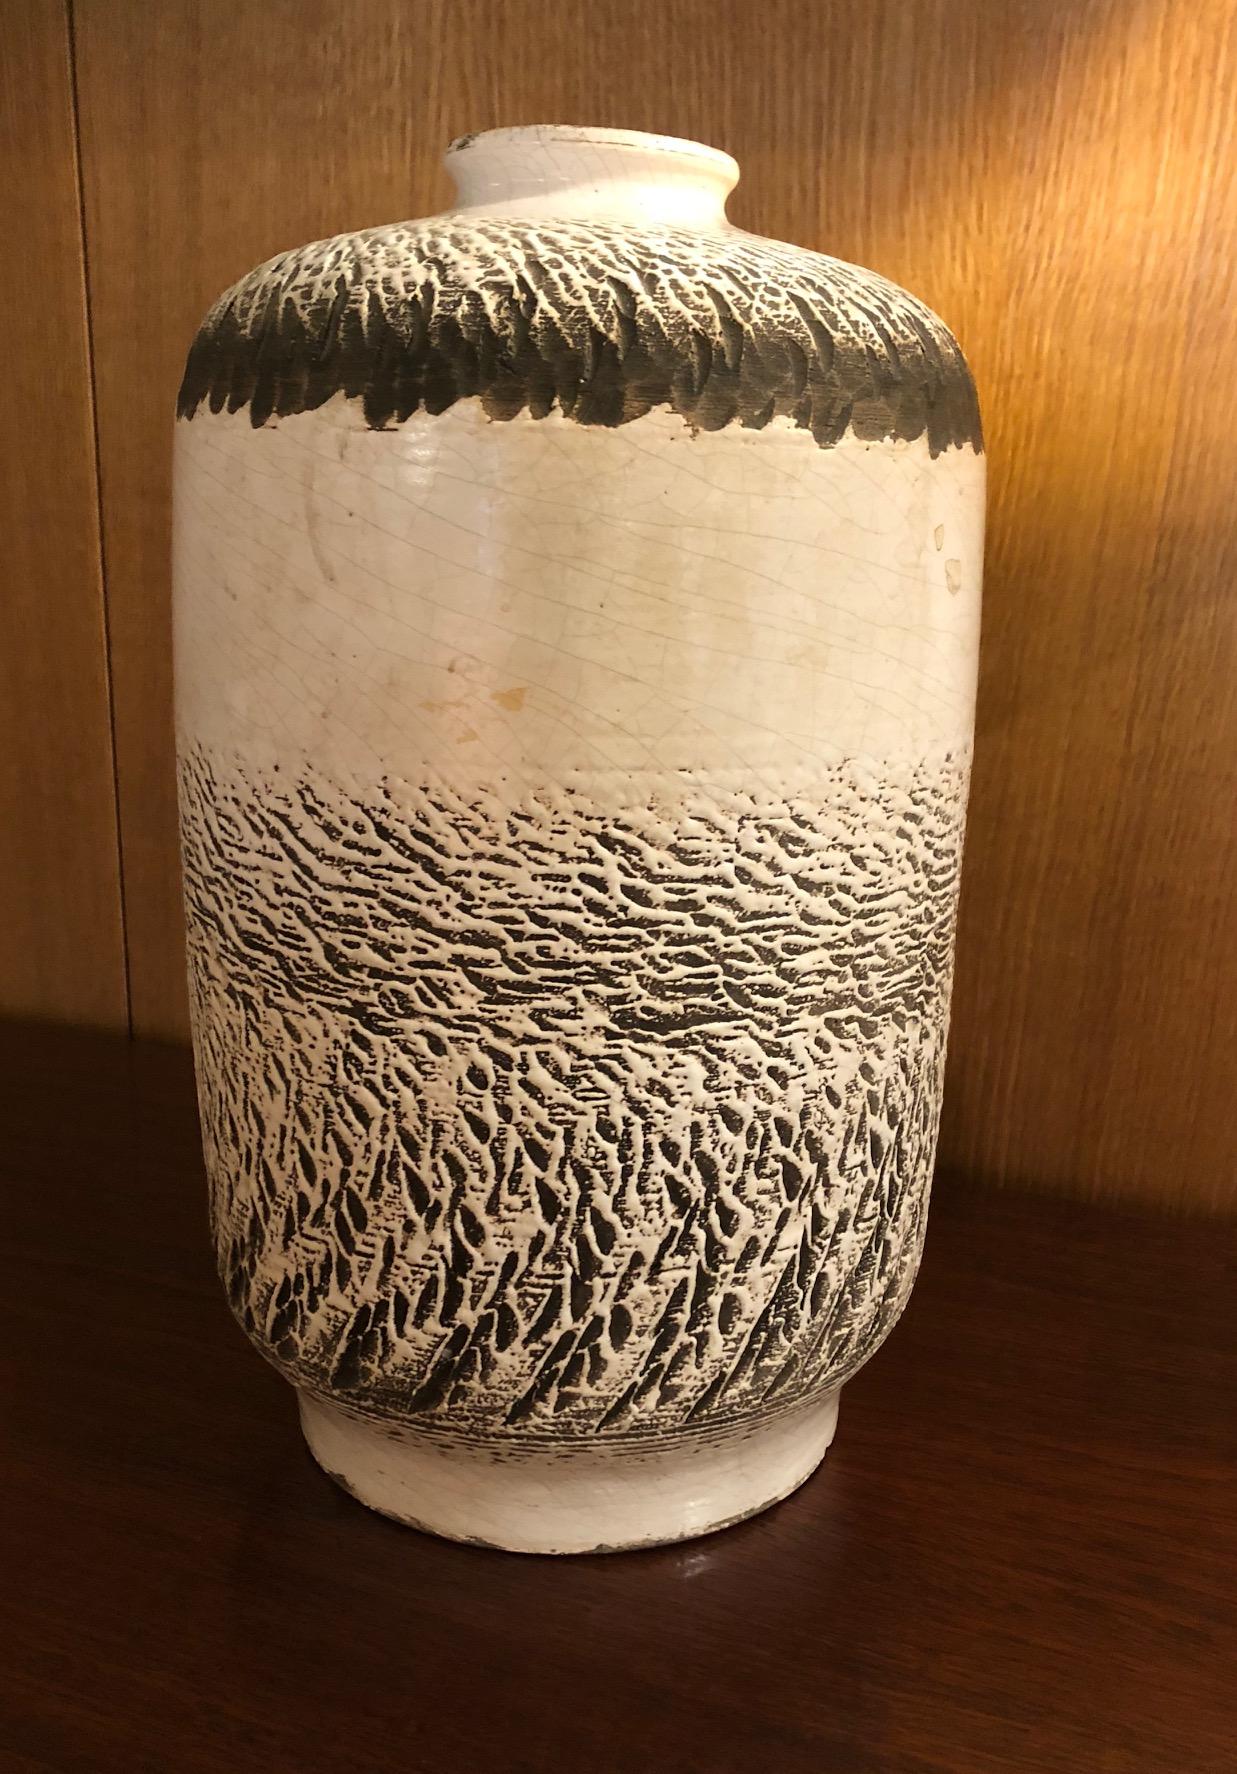 Ceramic vase by Atelier Kéramos, Sèvres, France, 1950s-1960s.